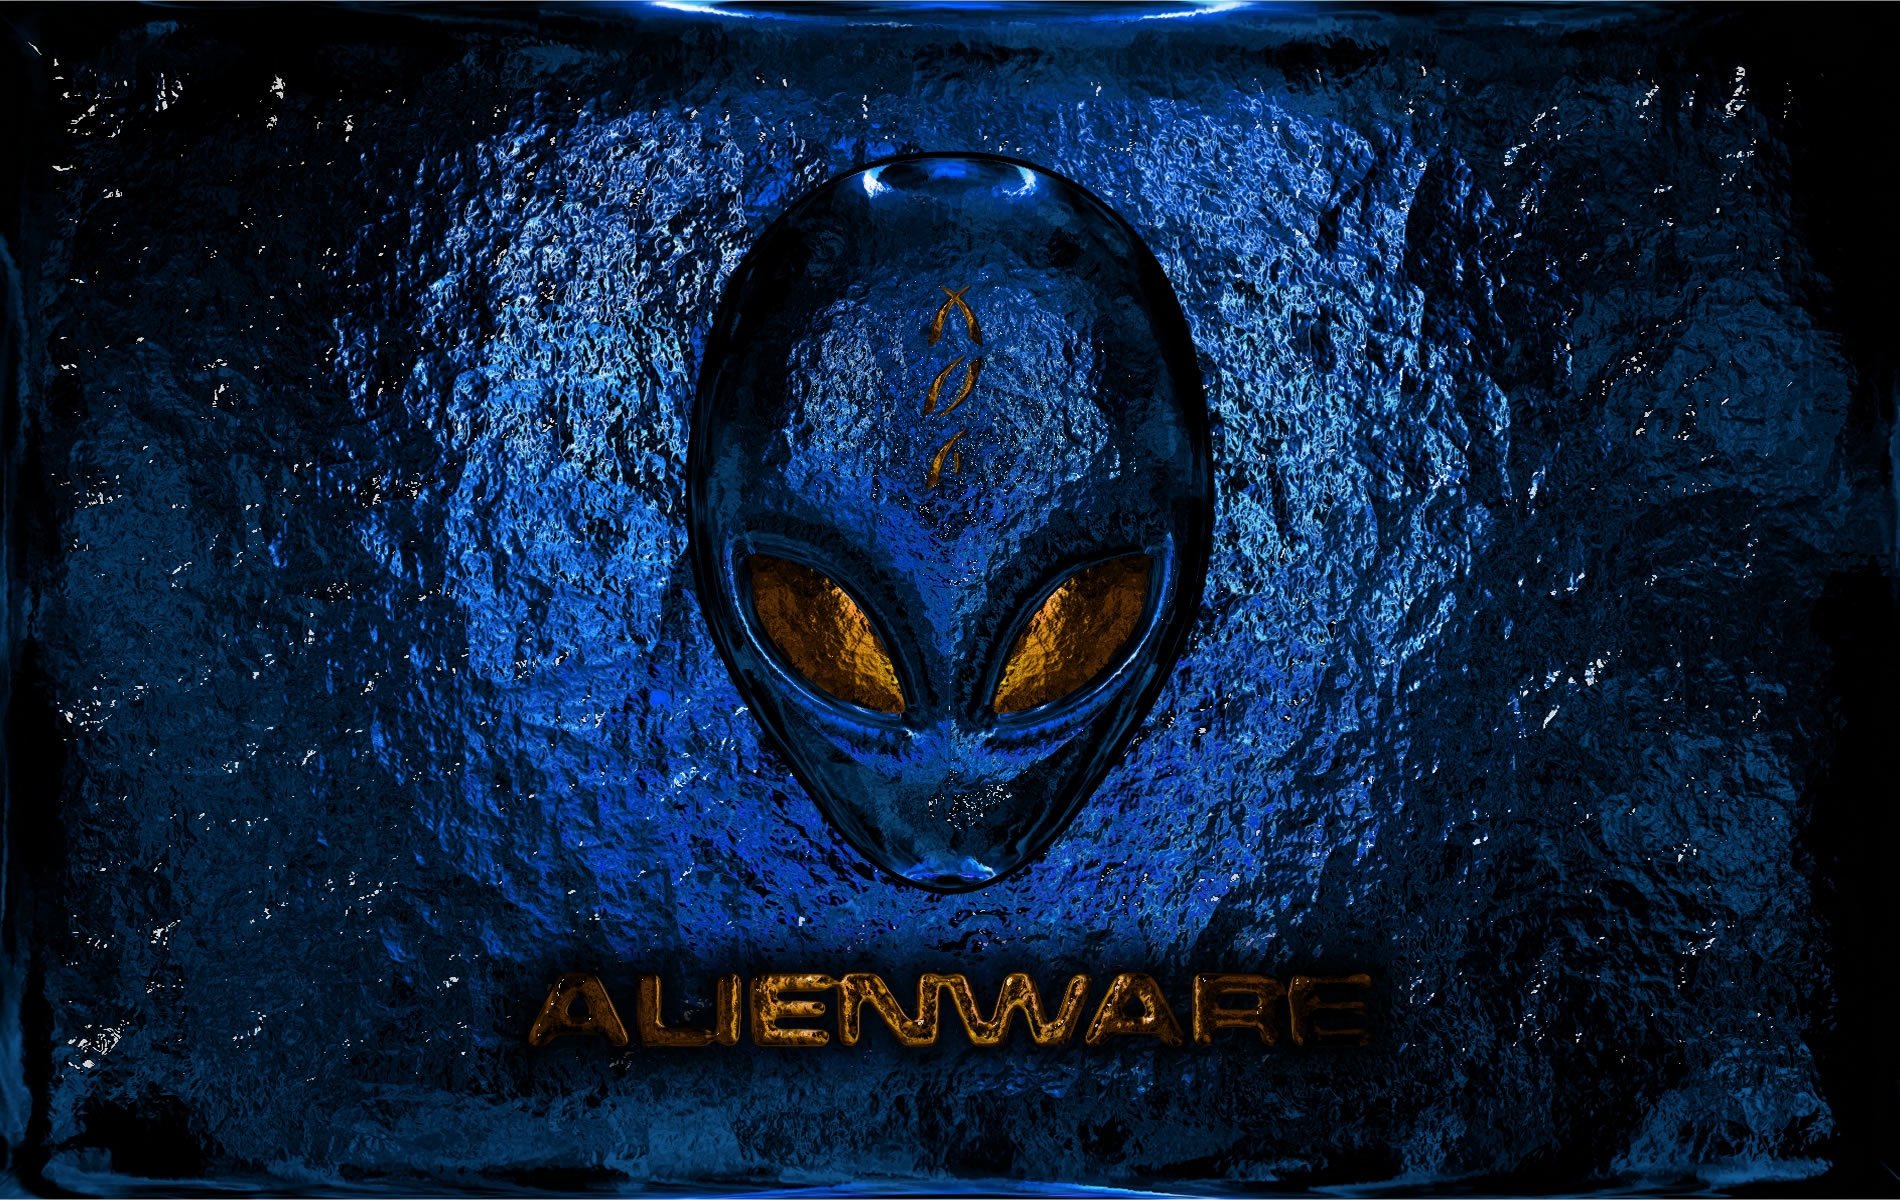 Alienware Blue Computer Wallpapers Desktop Backgrounds 1900x1200 1900x1200